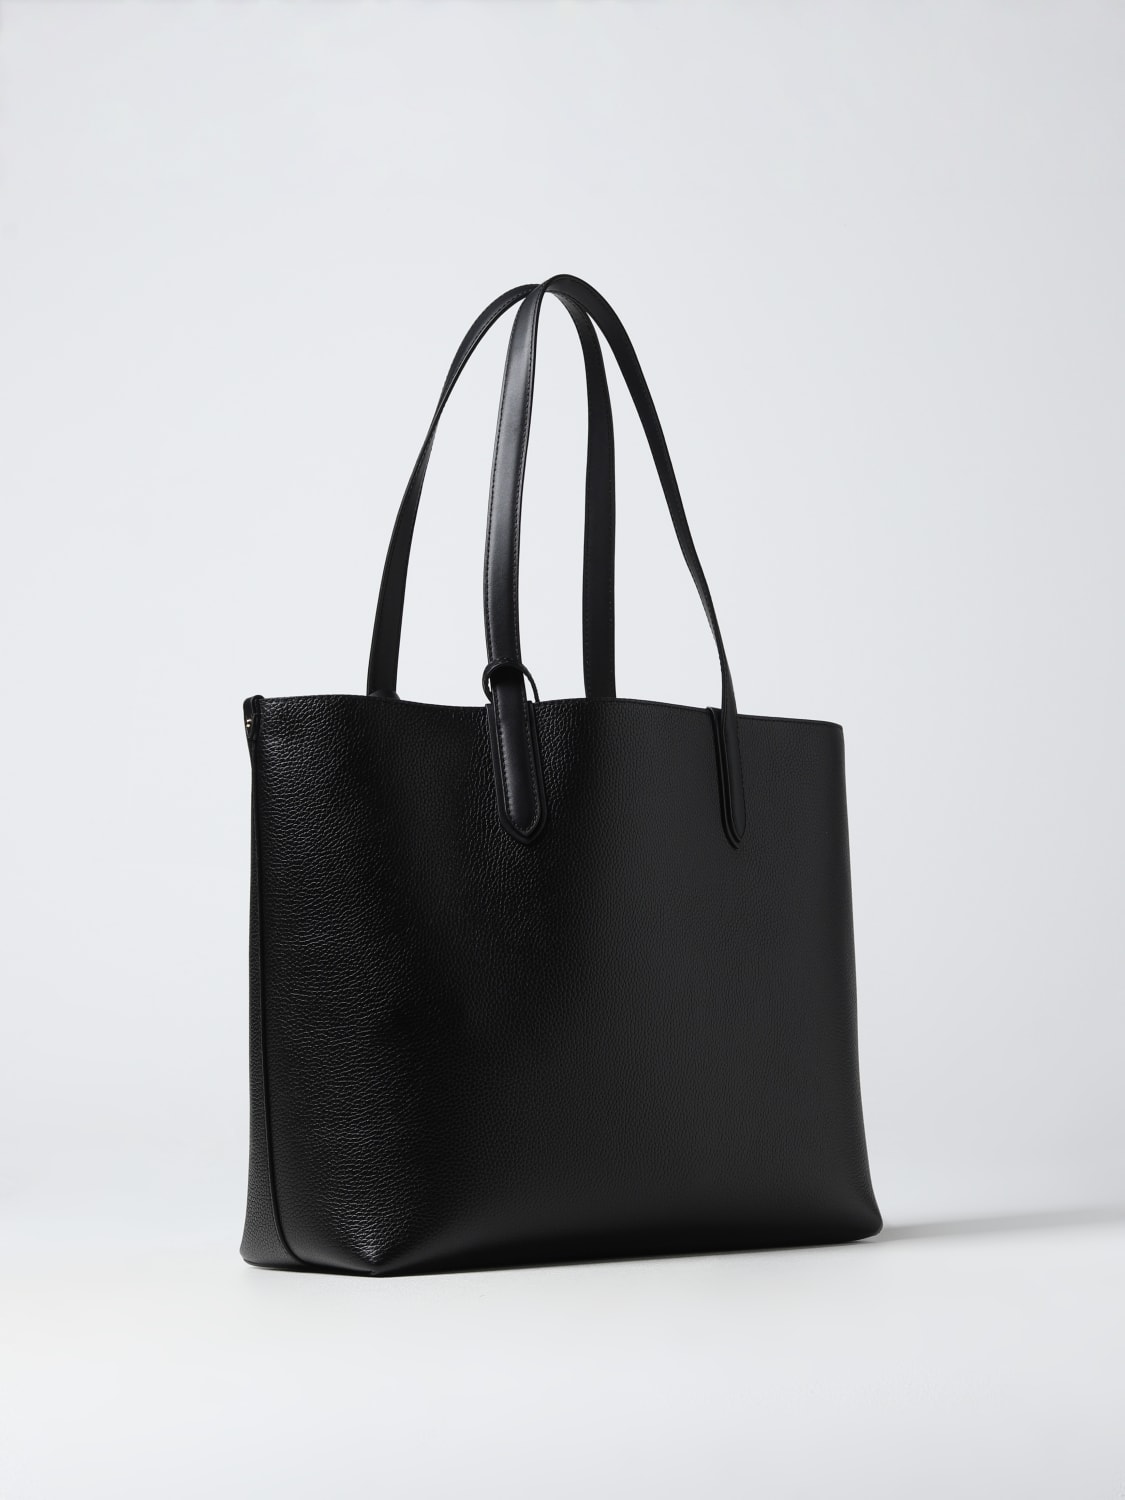 MICHAEL Michael Kors Women's Black Tote Bags